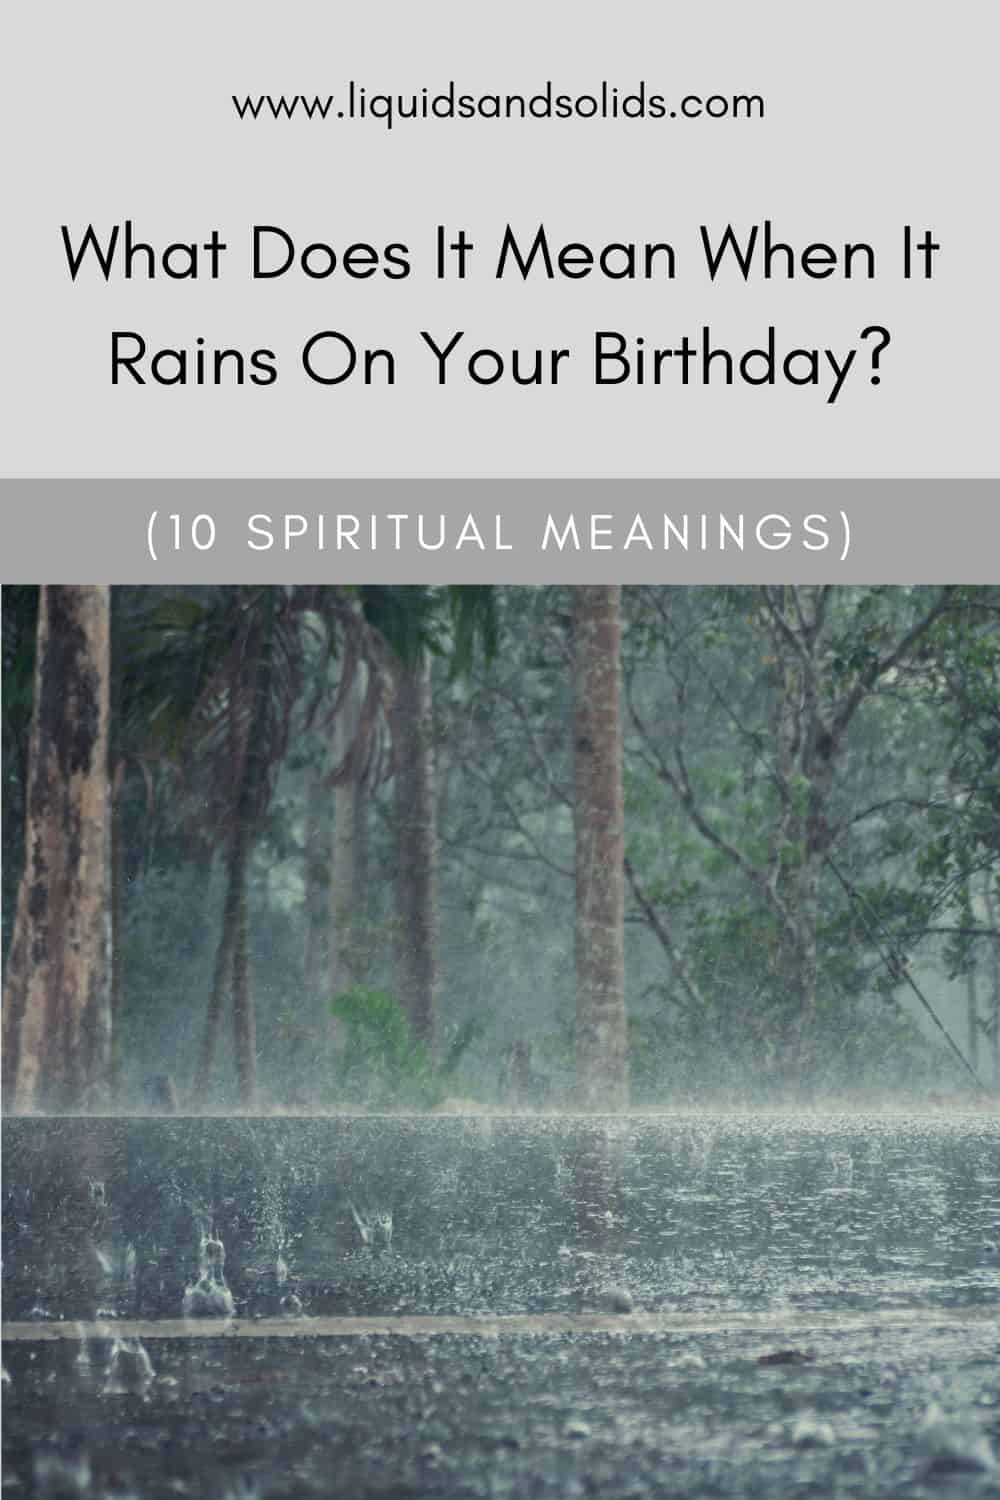  Ce que signifie la pluie le jour de votre anniversaire (10 significations spirituelles)